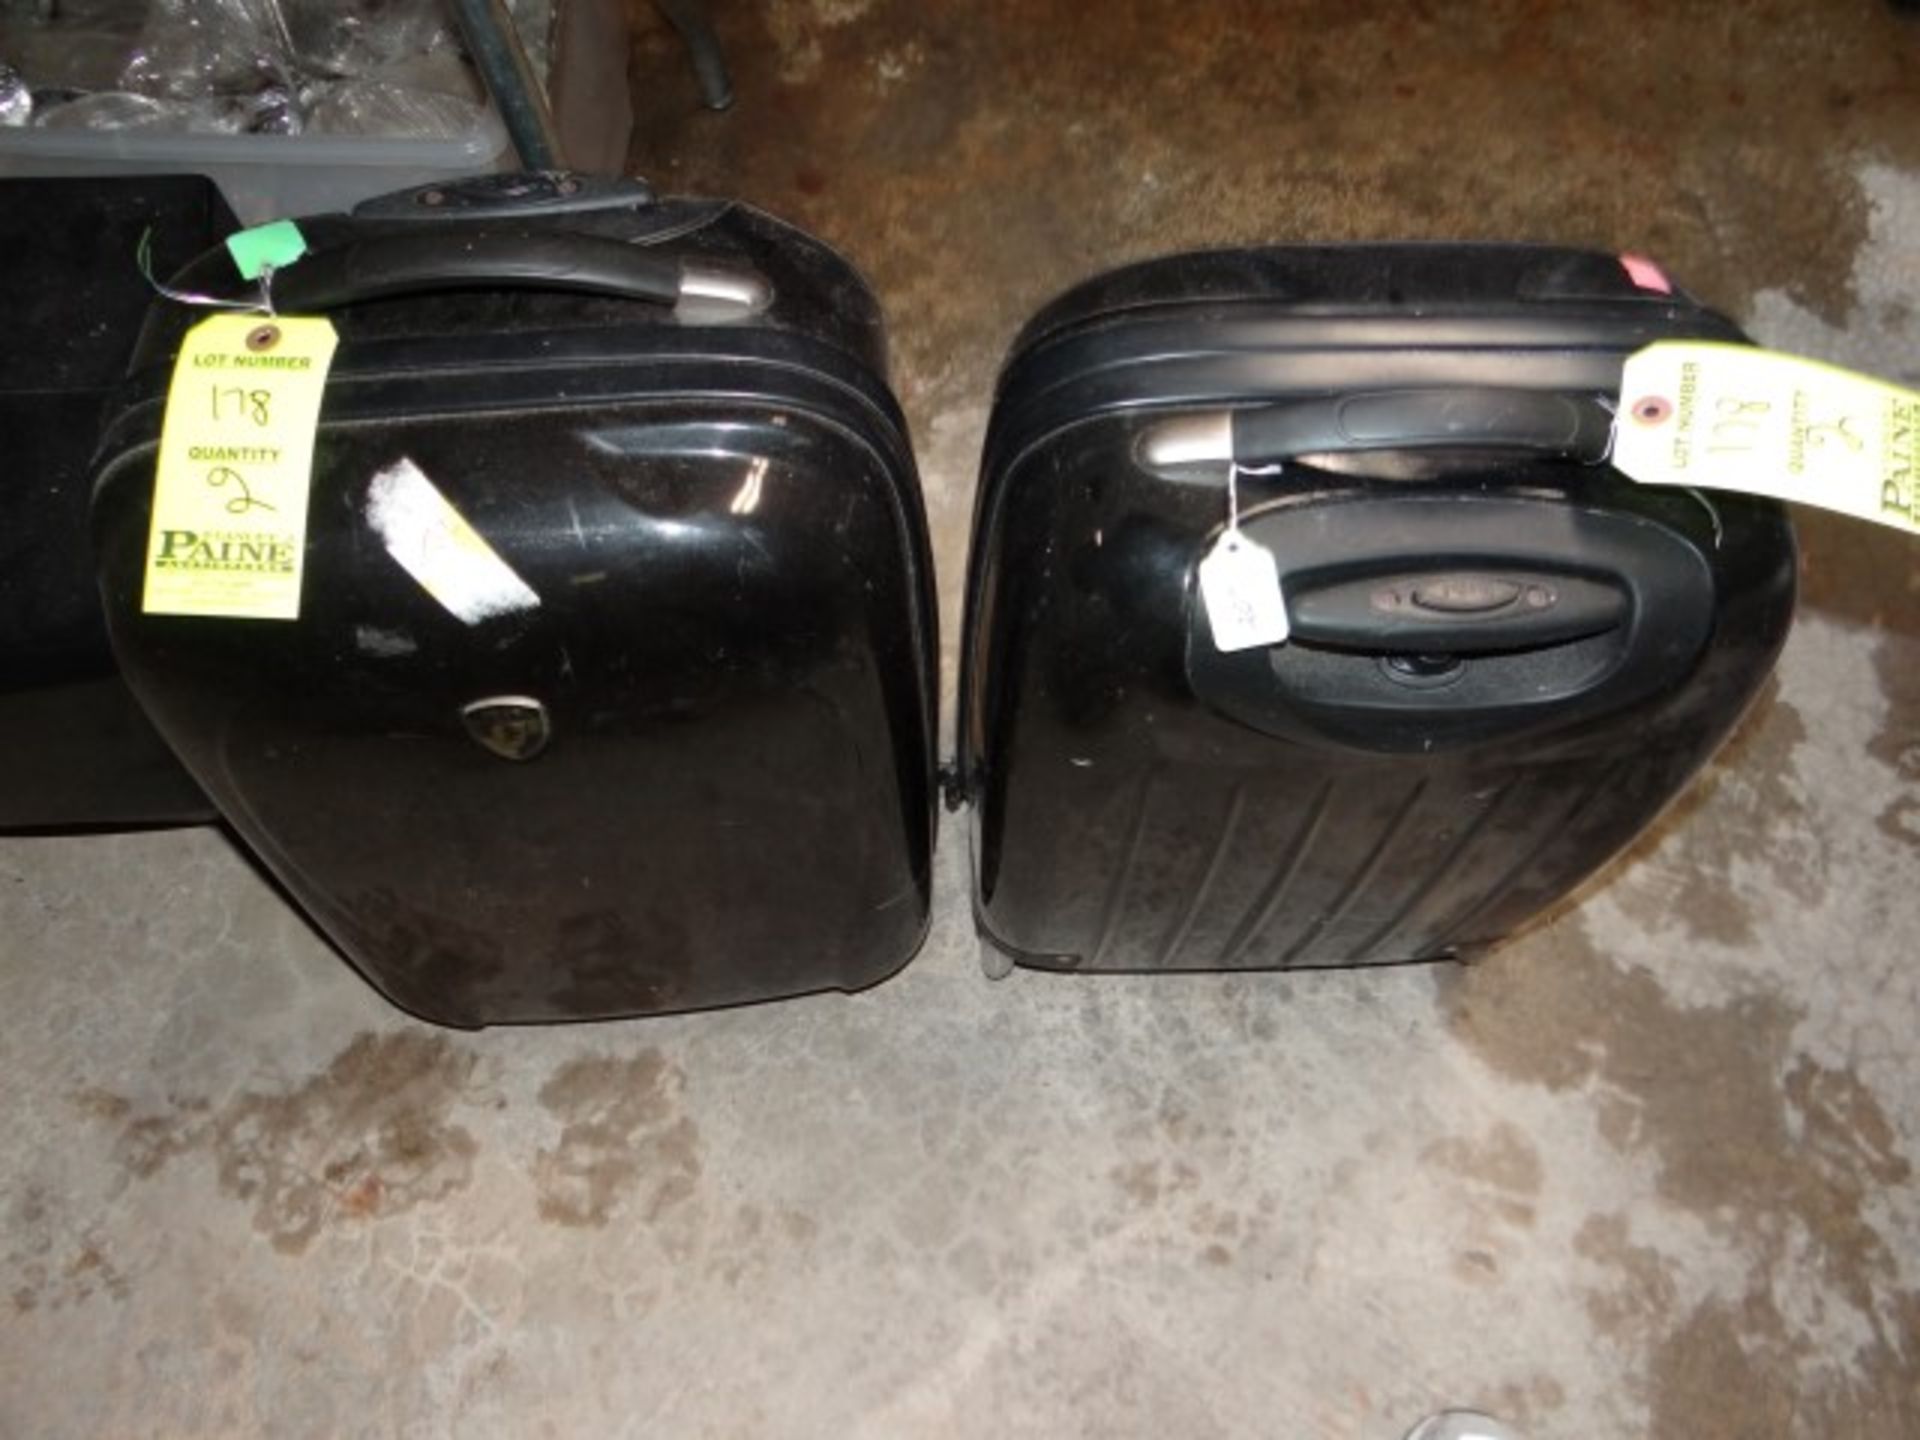 (1) Lugage Bag